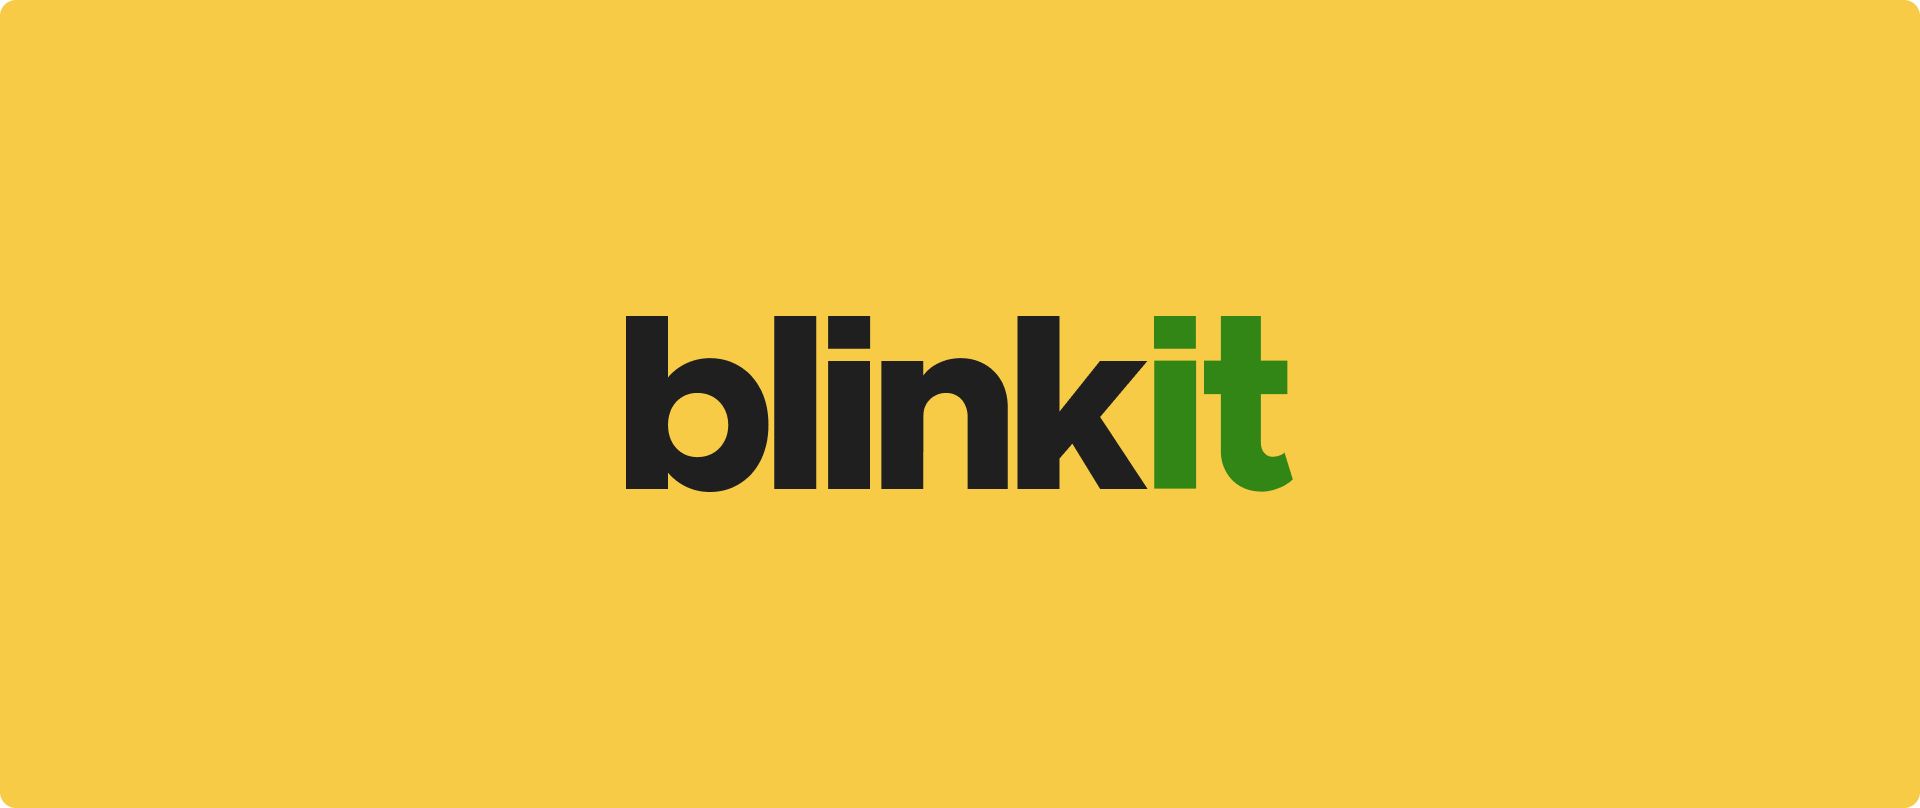 Werkt Blinkit niet? Ontdek tips voor het oplossen van problemen en vind de beste Blinkit-alternatieven voor naadloos boodschappen doen. Ga vandaag weer aan de slag!